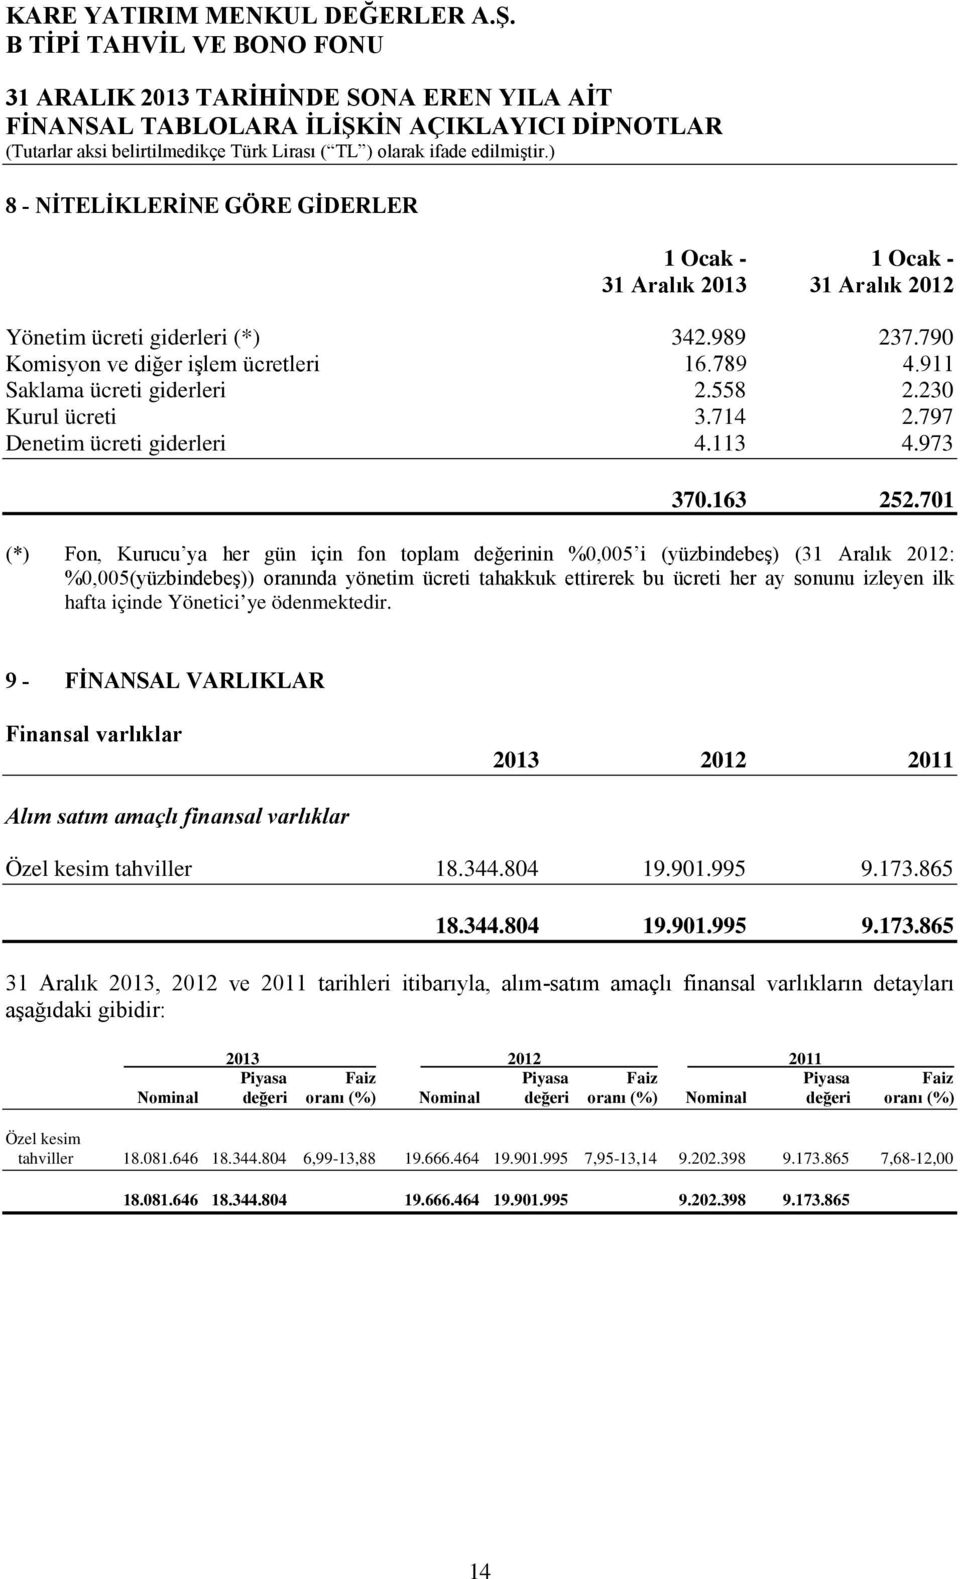 701 (*) Fon, Kurucu ya her gün için fon toplam değerinin %0,005 i (yüzbindebeş) (31 Aralık 2012: %0,005(yüzbindebeş)) oranında yönetim ücreti tahakkuk ettirerek bu ücreti her ay sonunu izleyen ilk